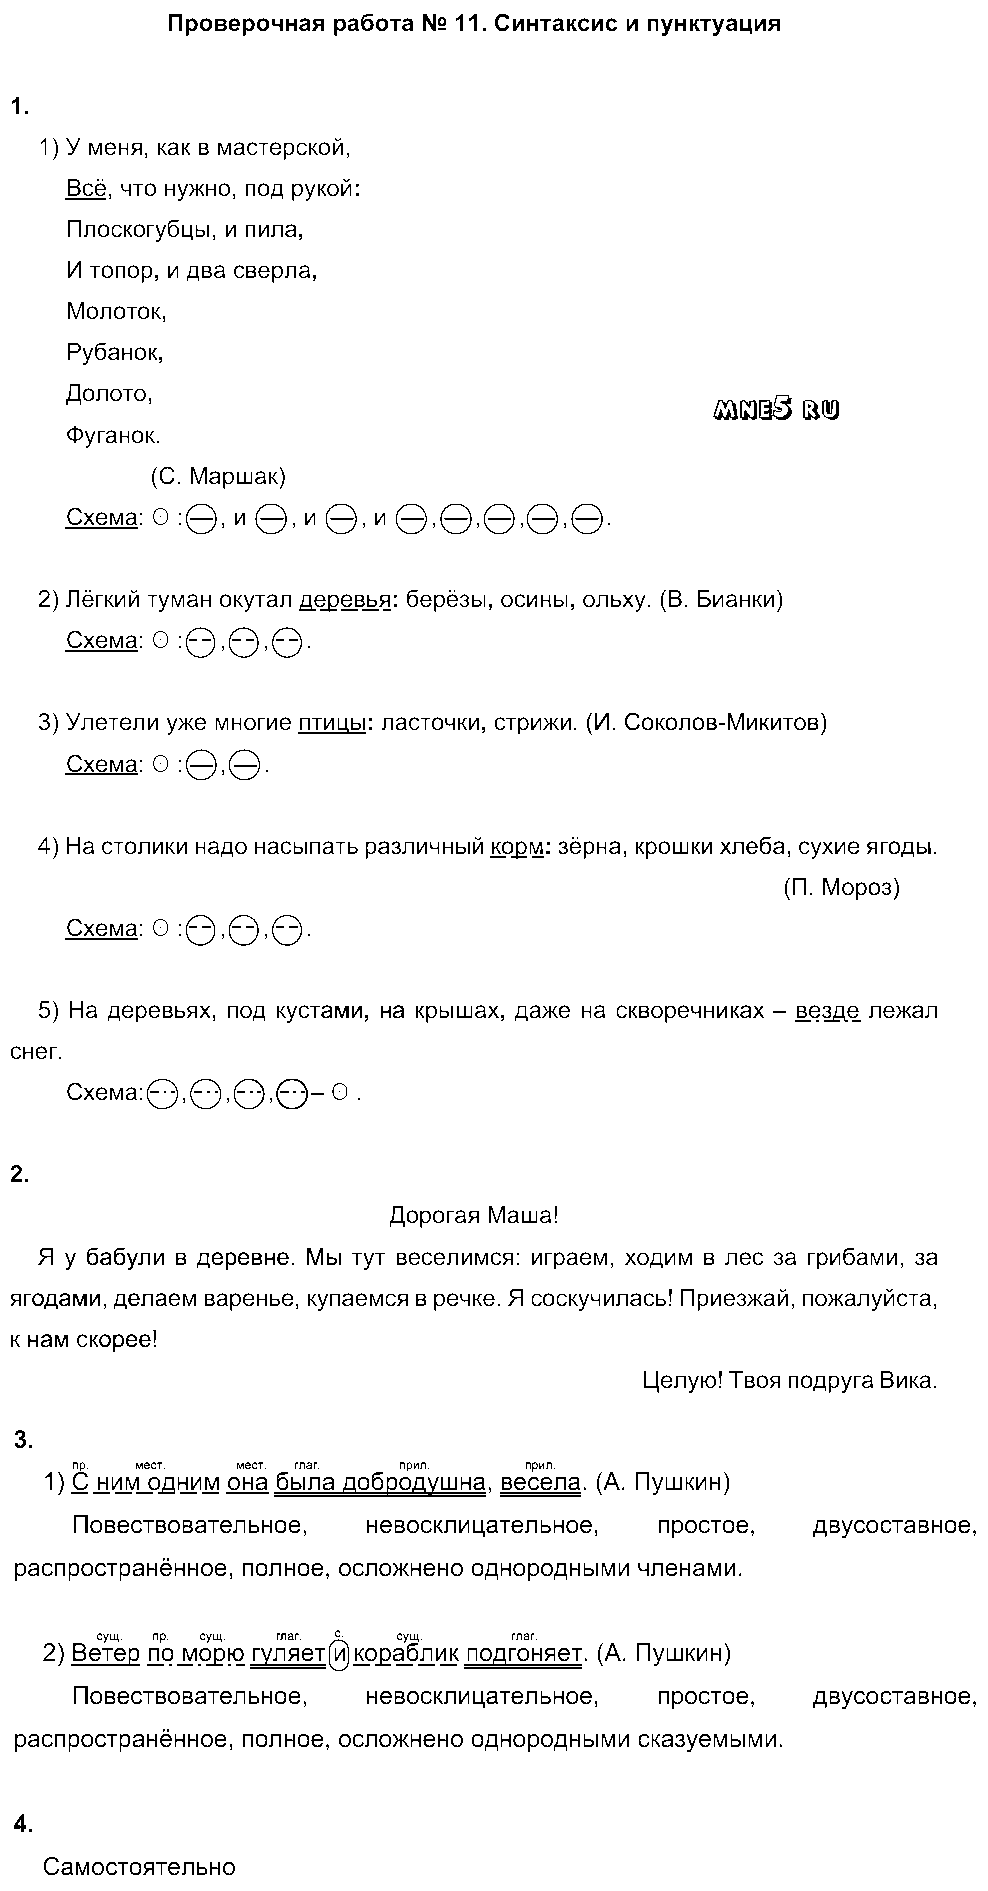 ГДЗ Русский язык 5 класс - ПР-11. Синтаксис и пунктуация